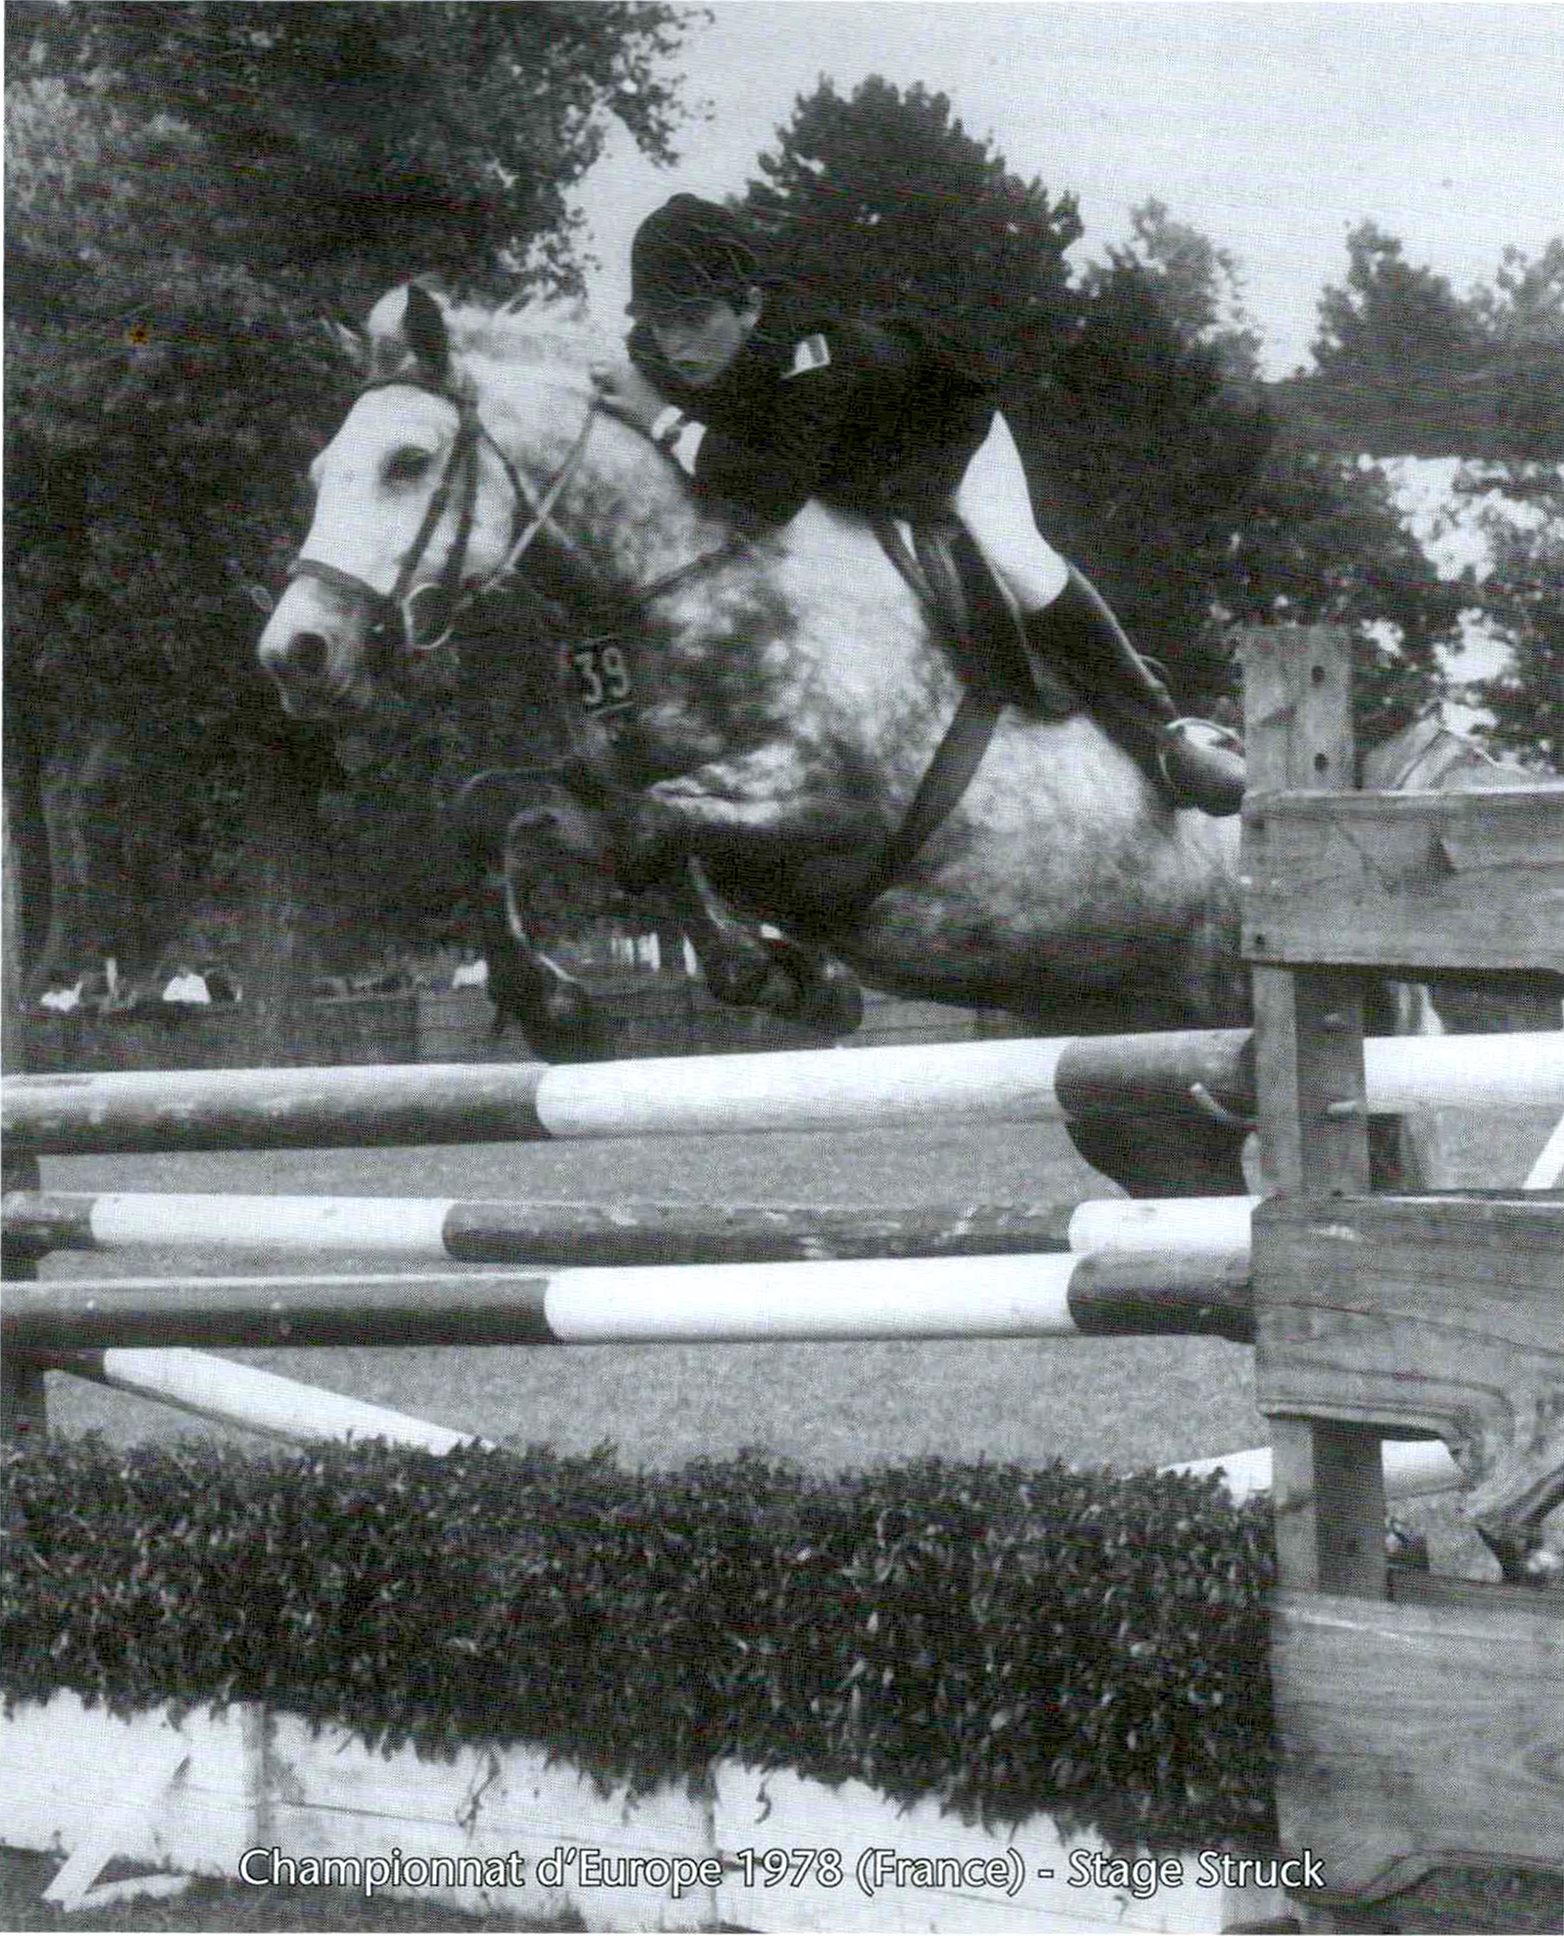 Roger-Yves Bost a vécu ses premiers championnats d’Europe à douze ans, associé à un poney nommé Stage Struck.